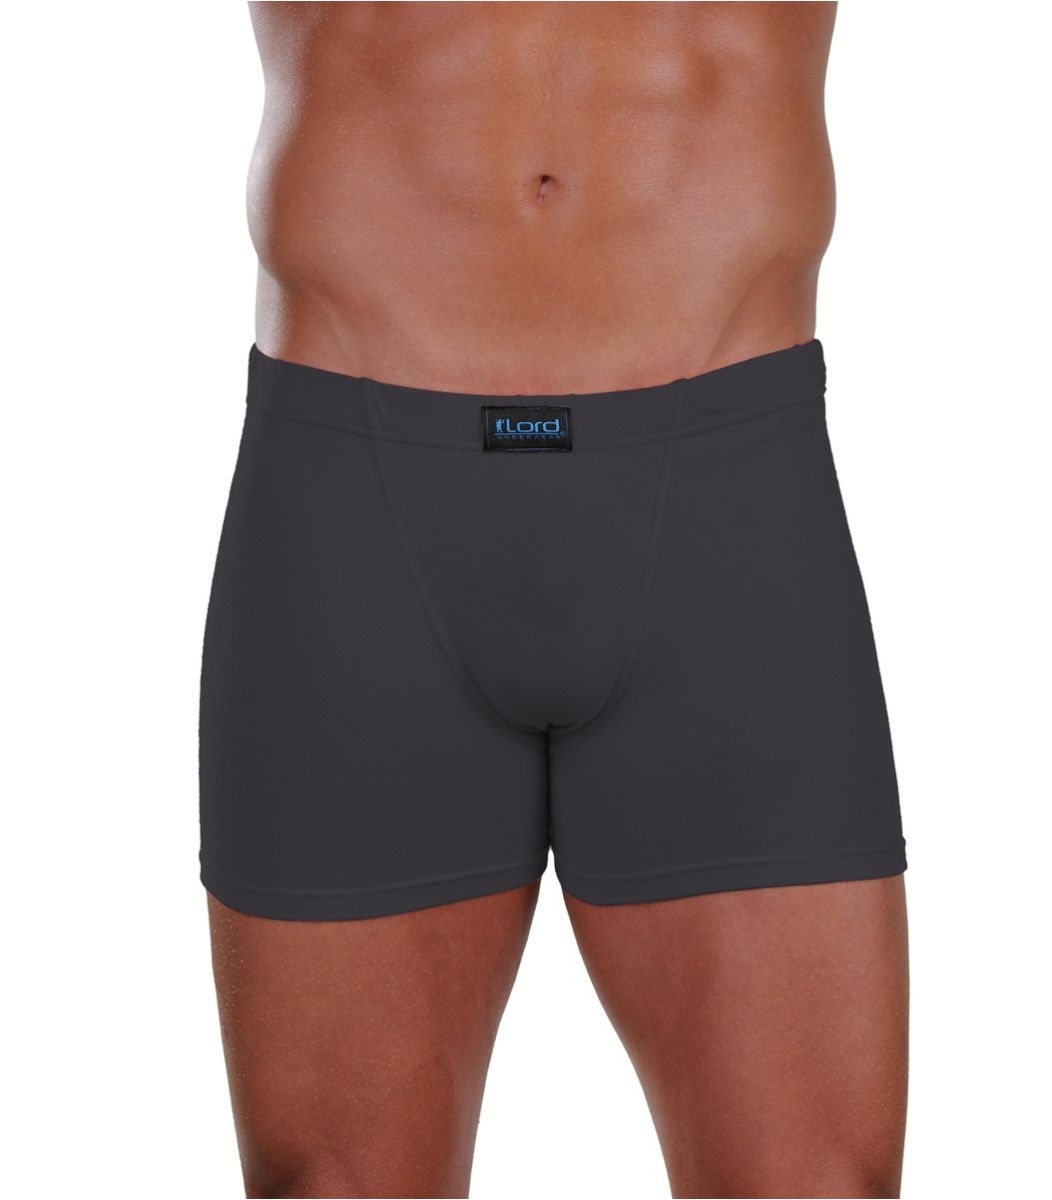 Men underwear boxer, cotton-elastan Size Small Color Charcoal